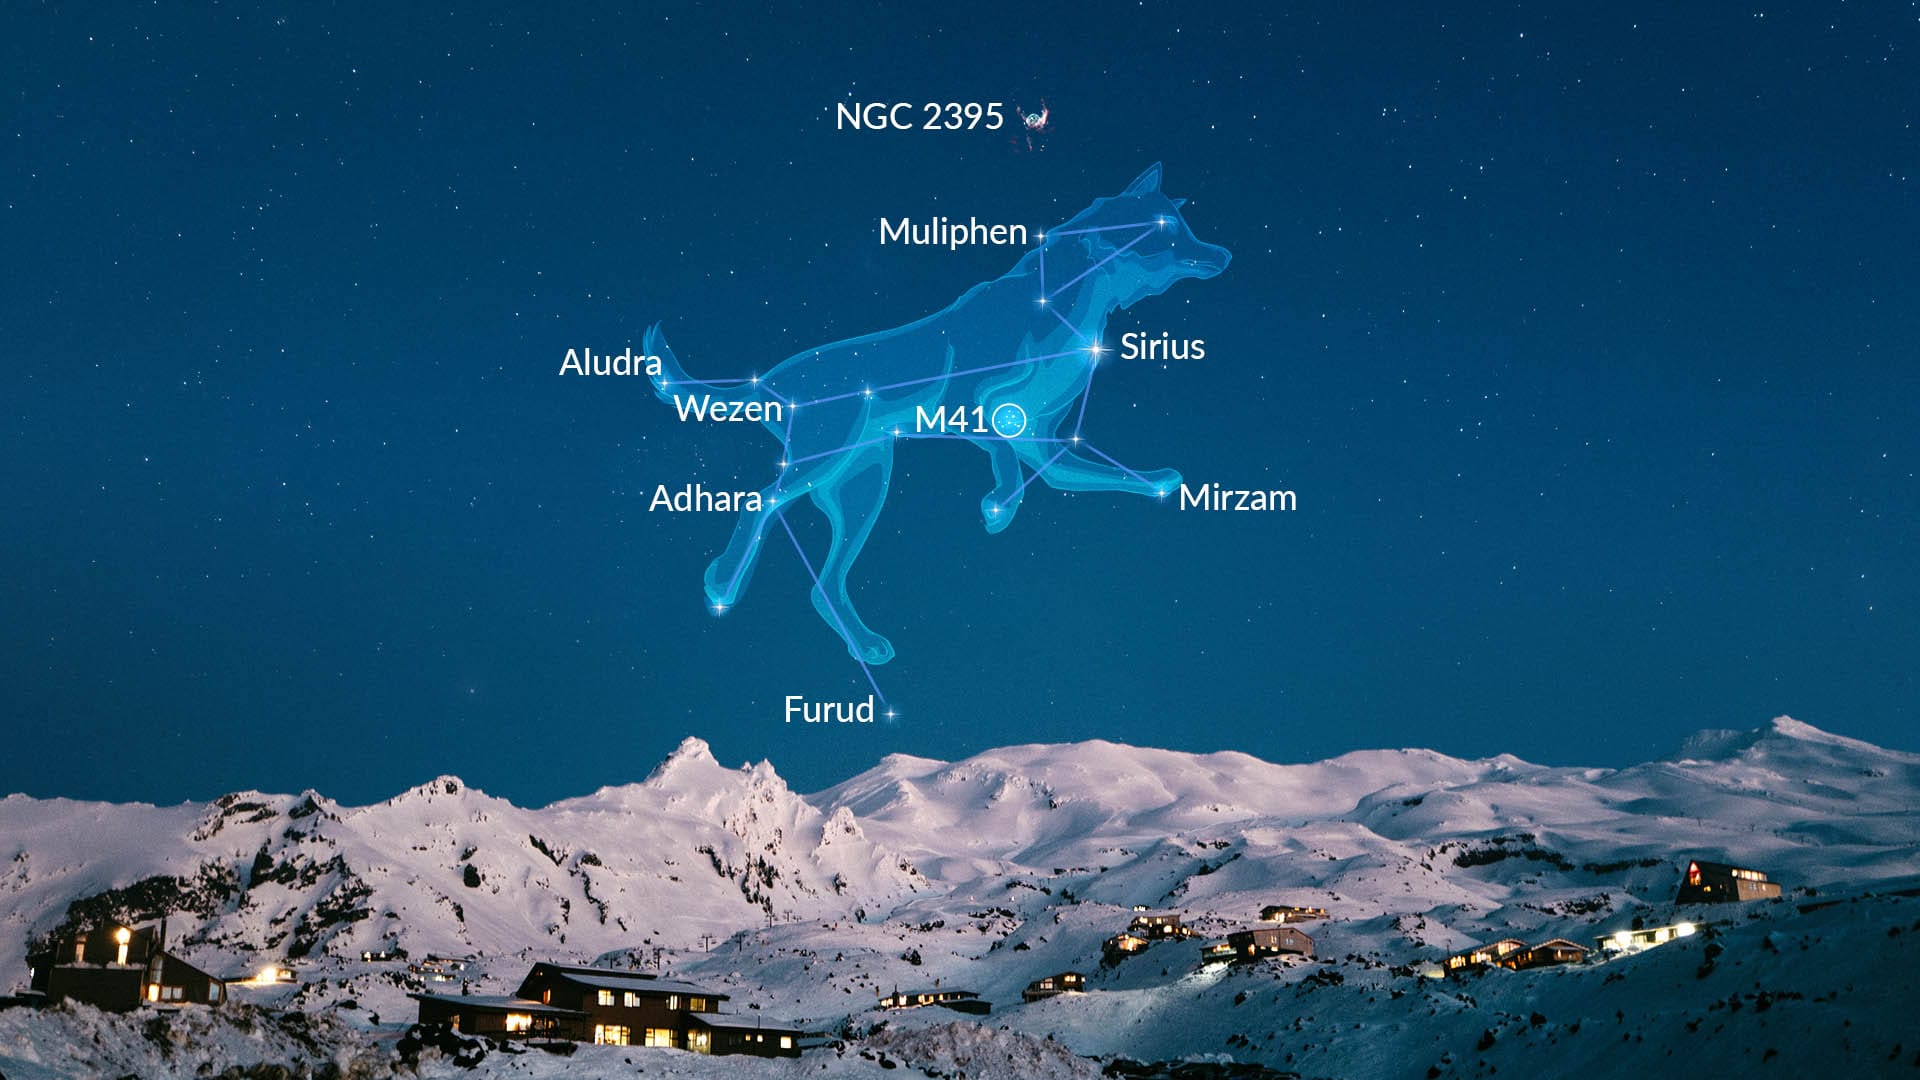 Grote Hond: Sirius, andere grote sterren en deepskyobjecten